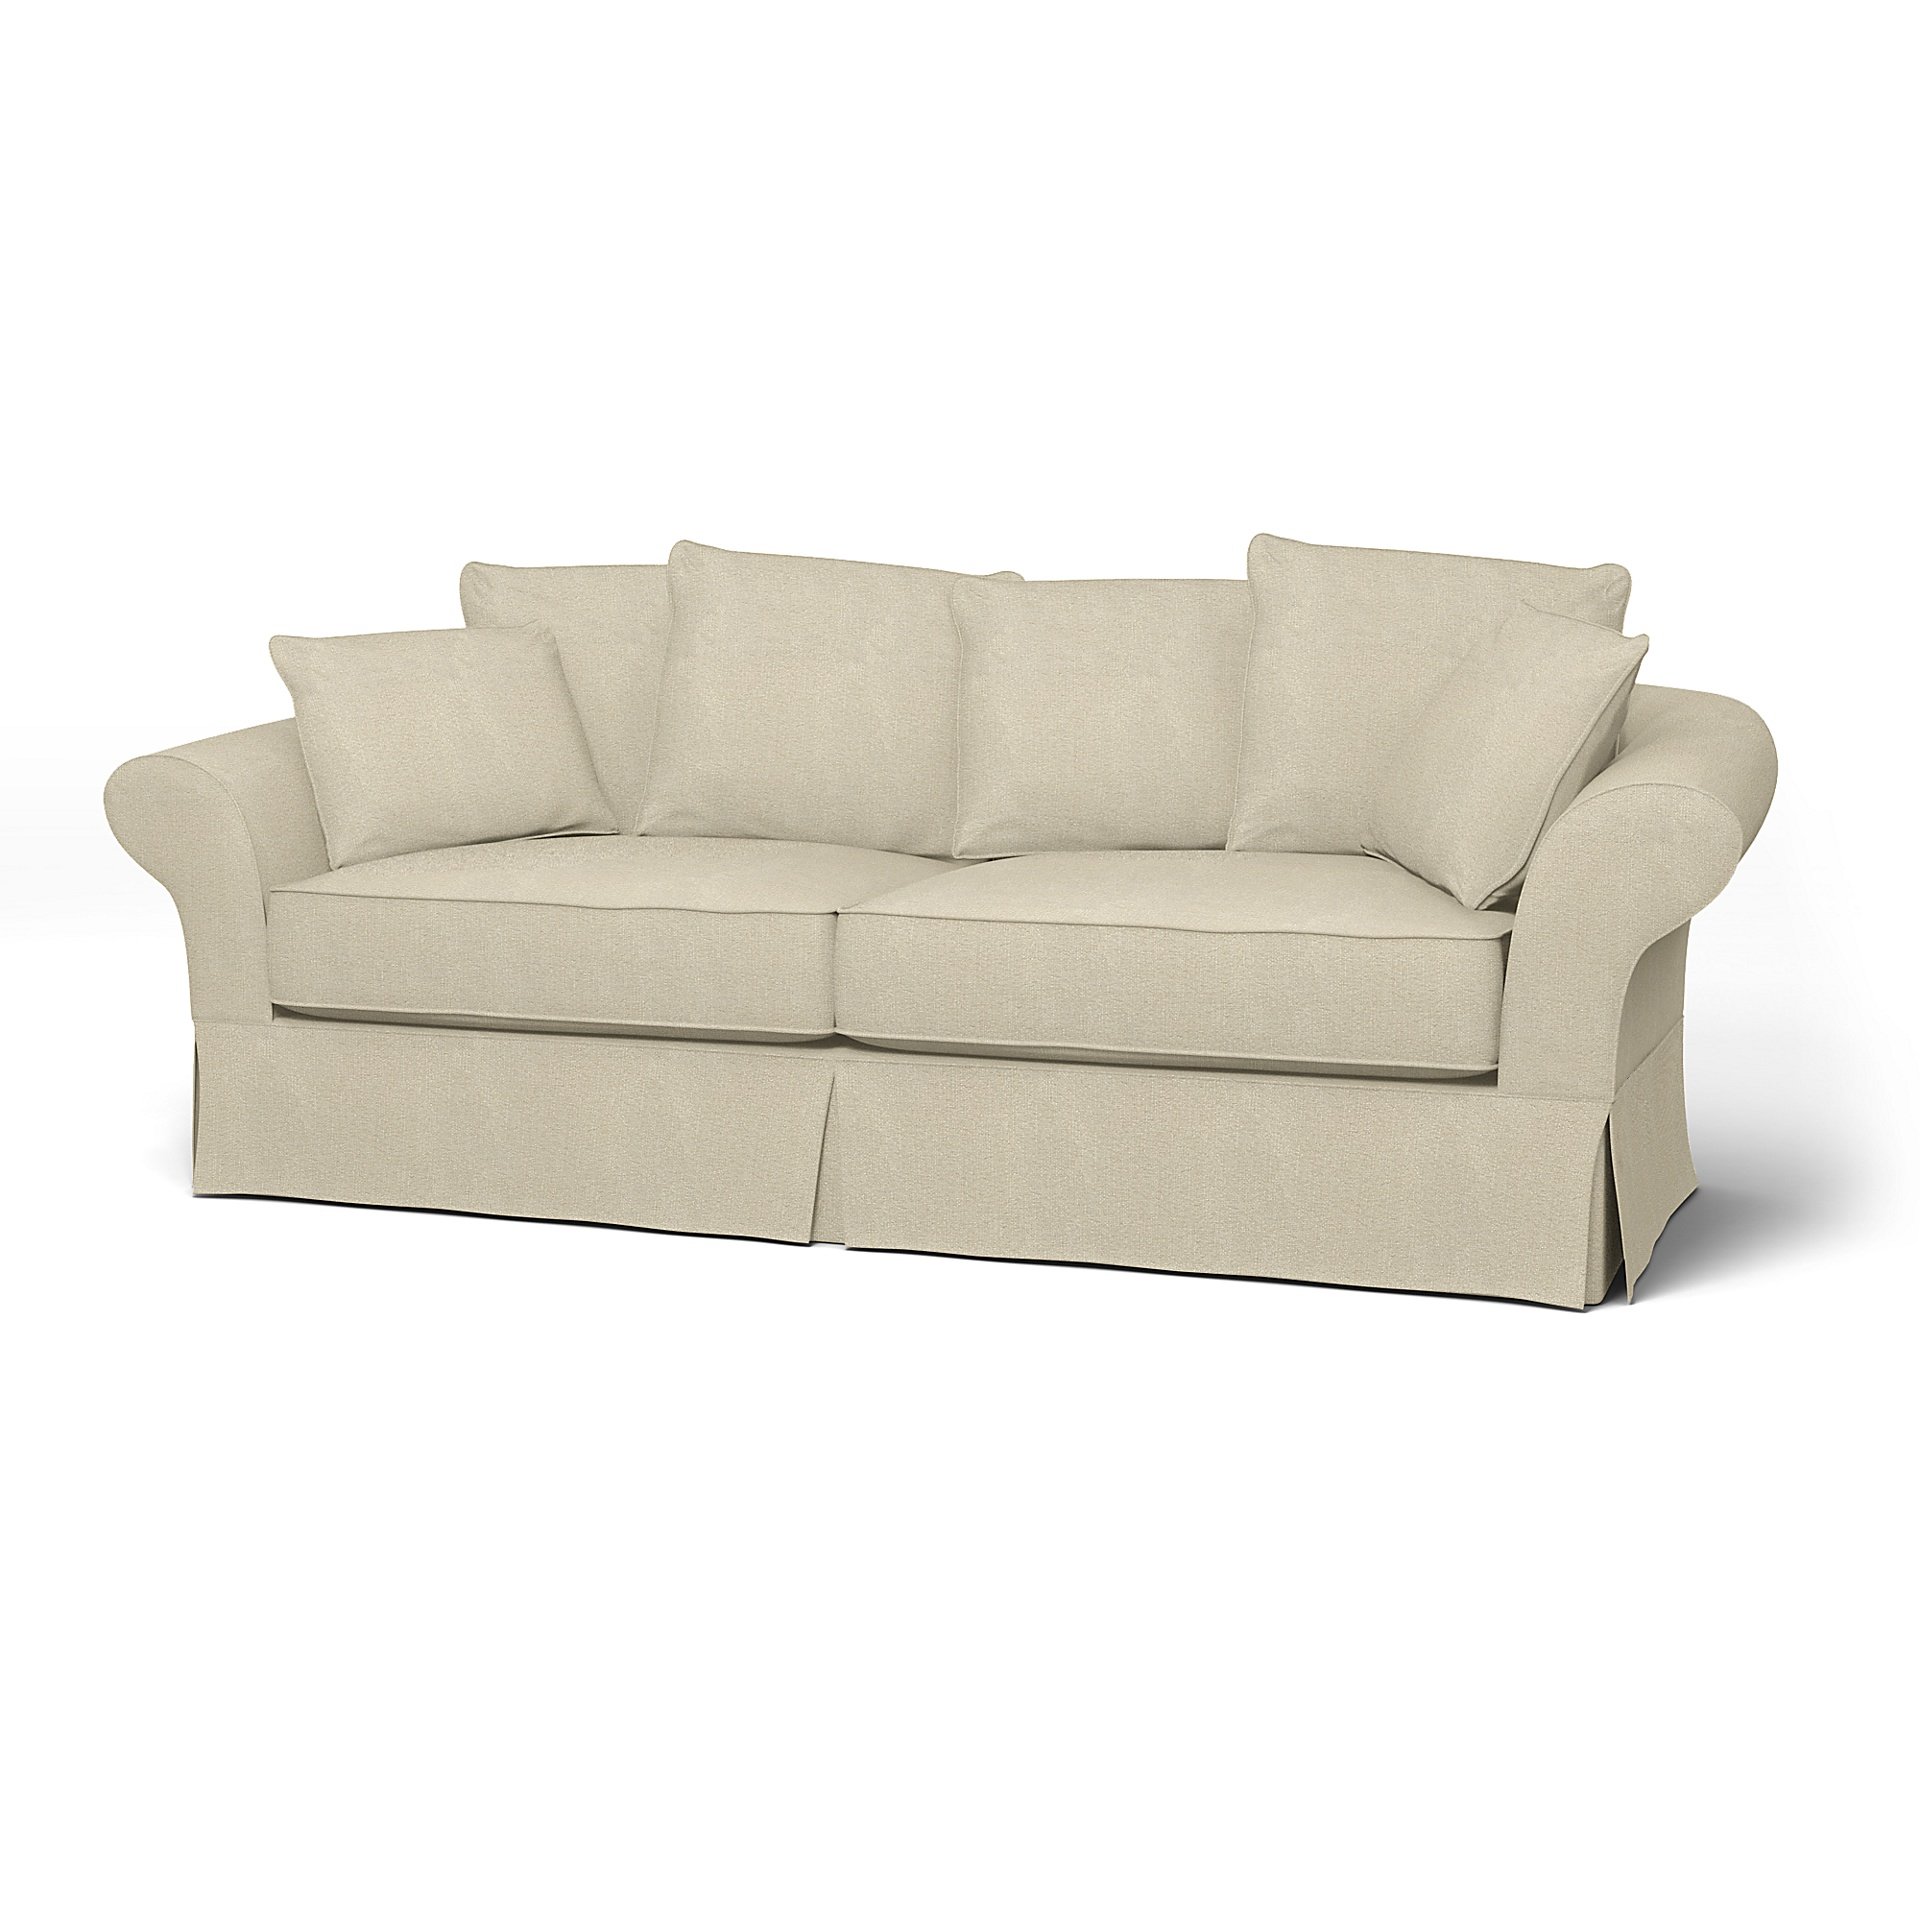 IKEA - Backamo 3 Seater Sofa Cover, Cream, Boucle & Texture - Bemz